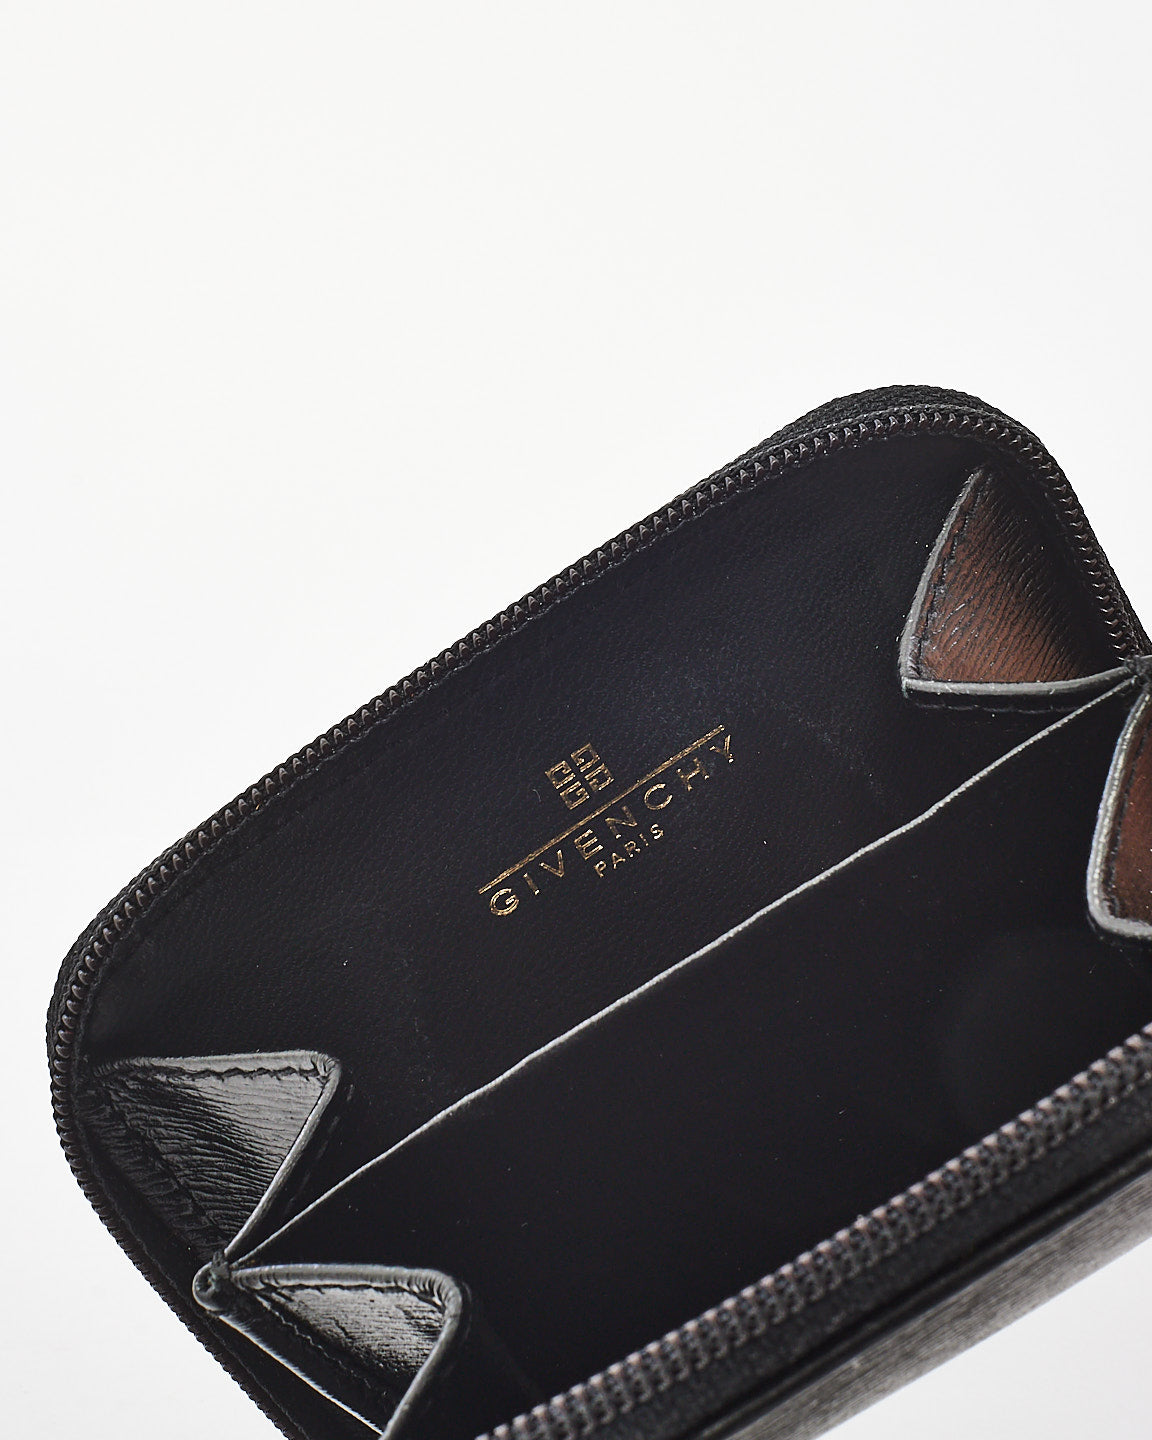 Givenchy Vintage Gentlemen Black Leather Zip Around Coin Purse Wallet